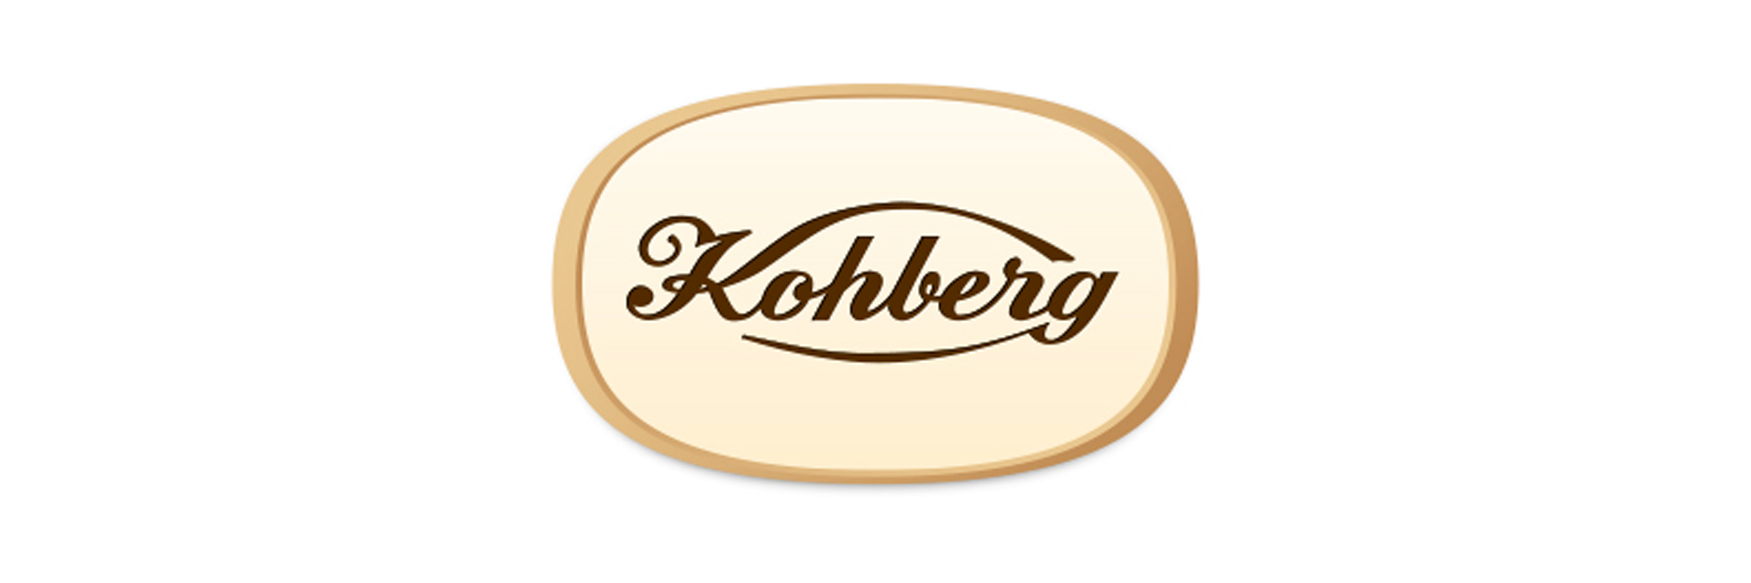 Kohberg Bakery Group A/S